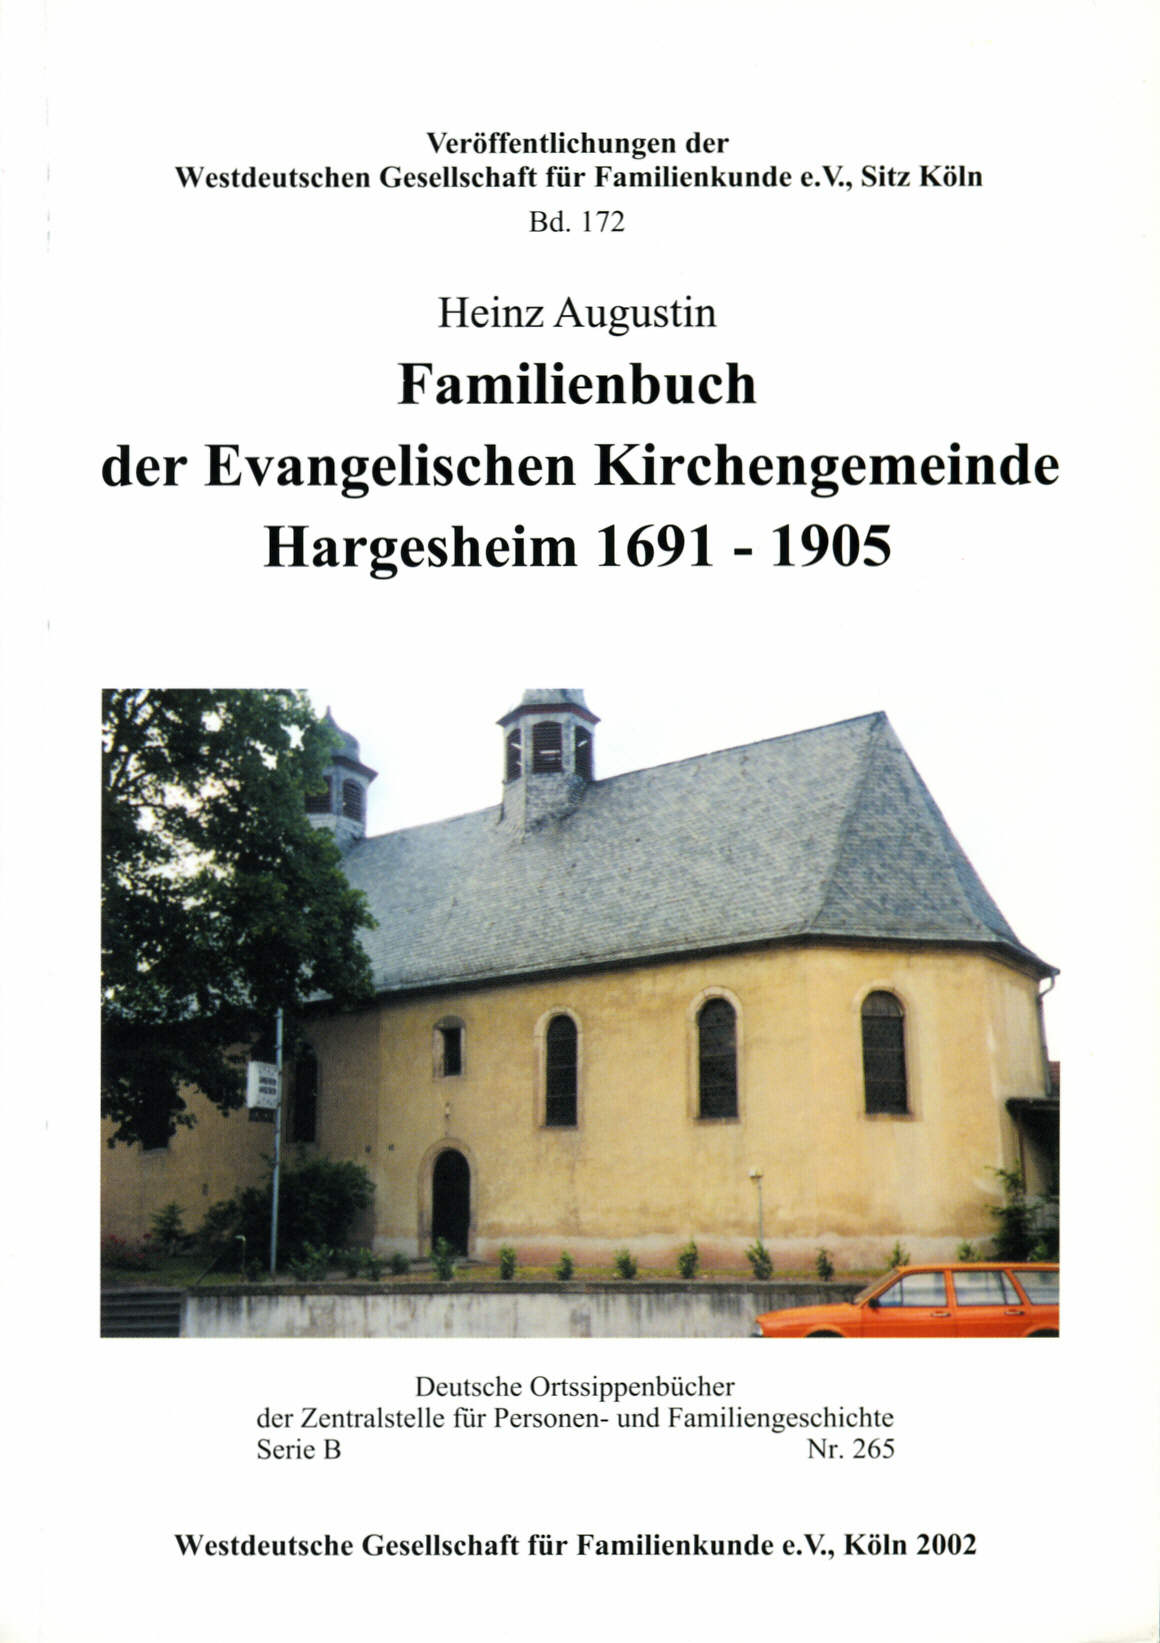 Ev. Familienbuch Hargesheim 1691-1905